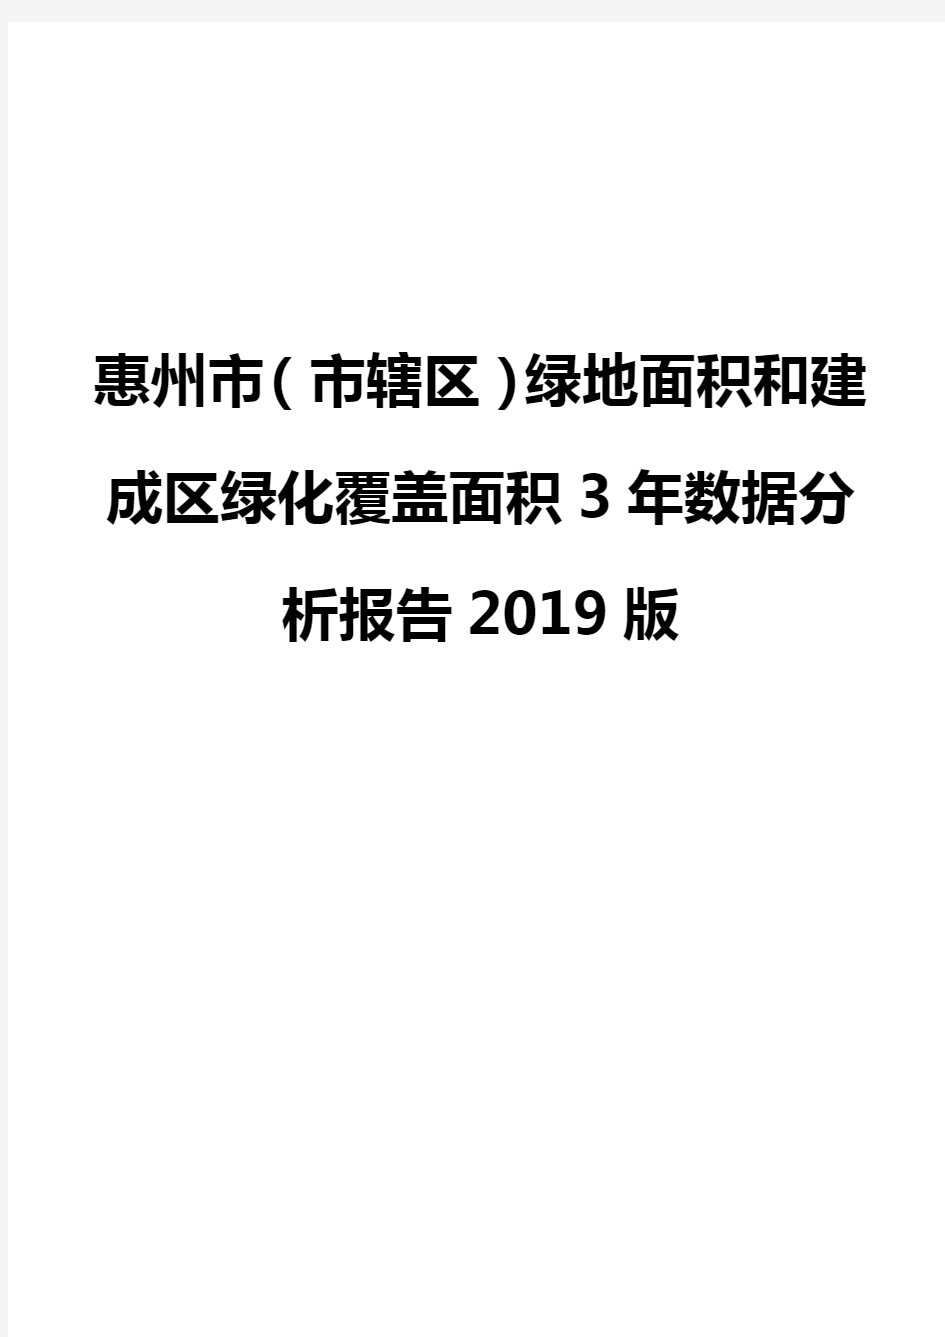 惠州市(市辖区)绿地面积和建成区绿化覆盖面积3年数据分析报告2019版